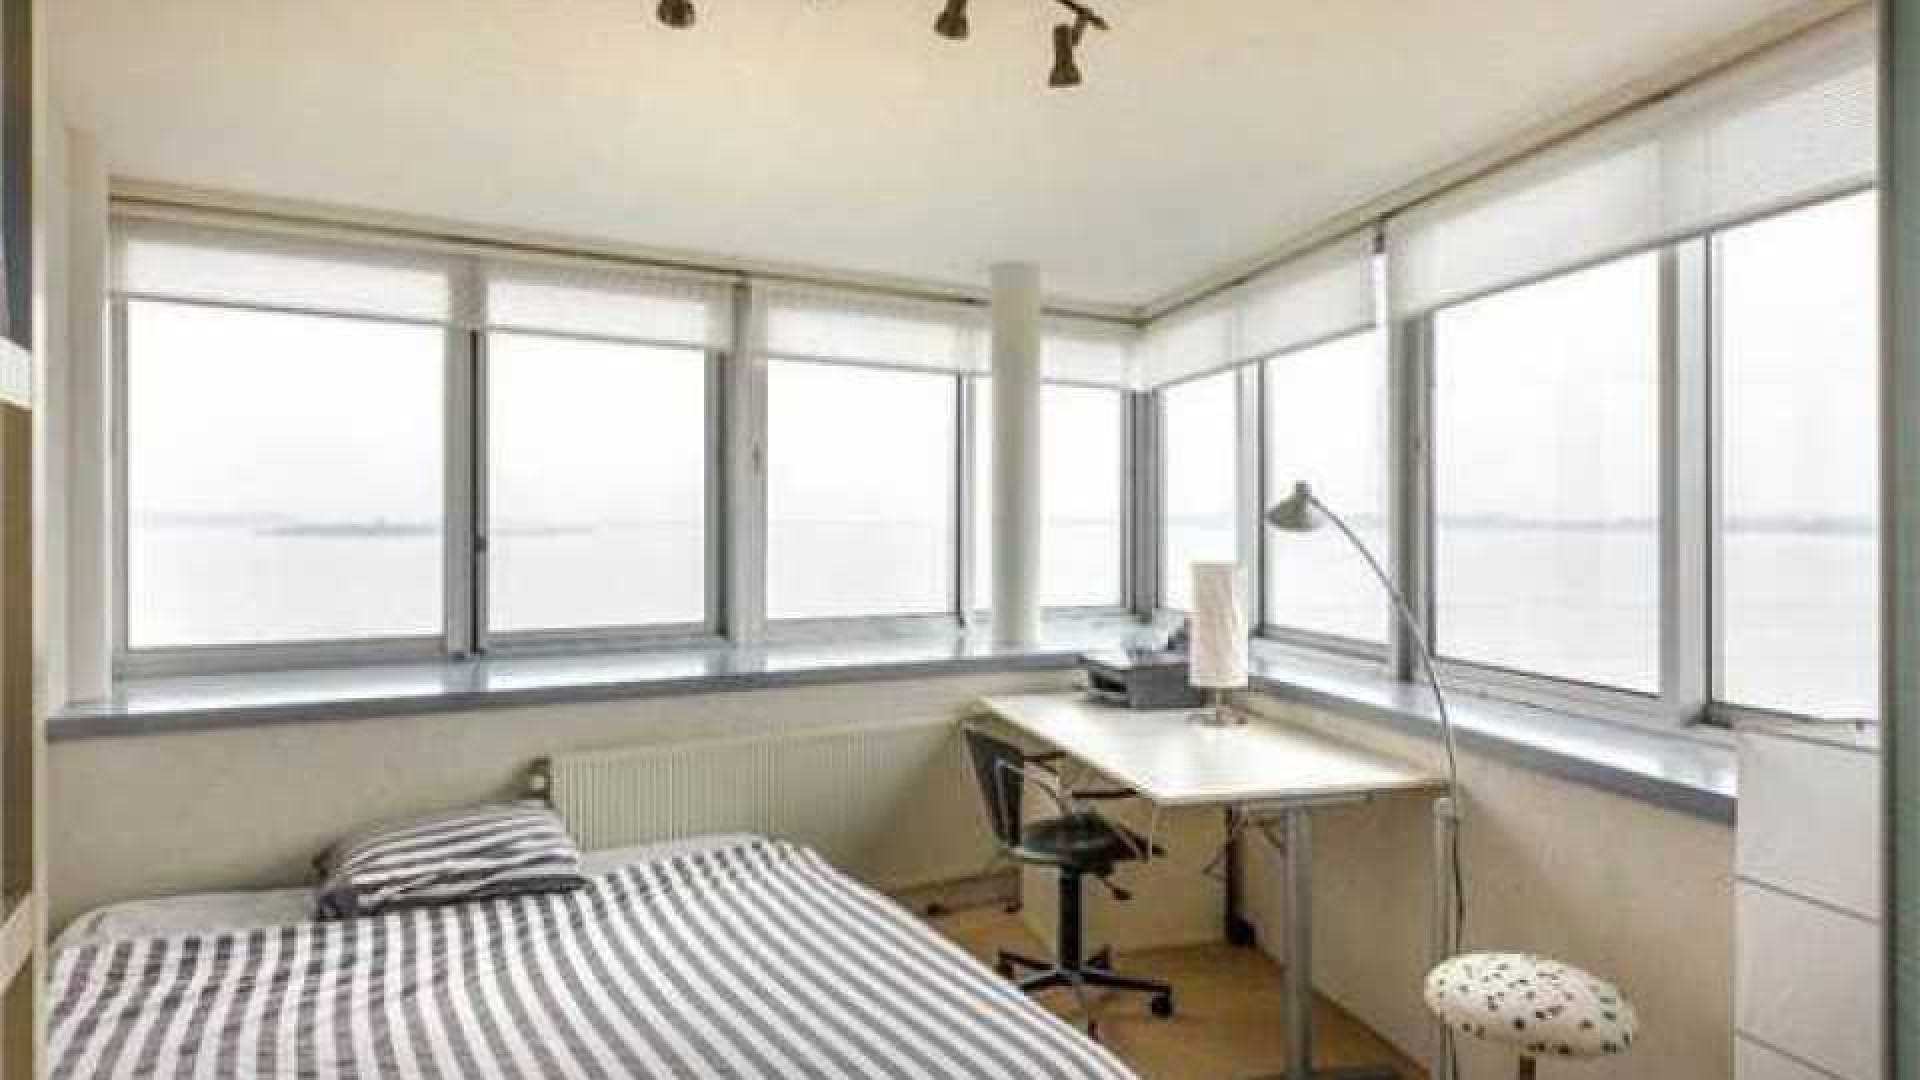 Thomas Berge ruilt riante villa met botenhuis in voor appartement. 11